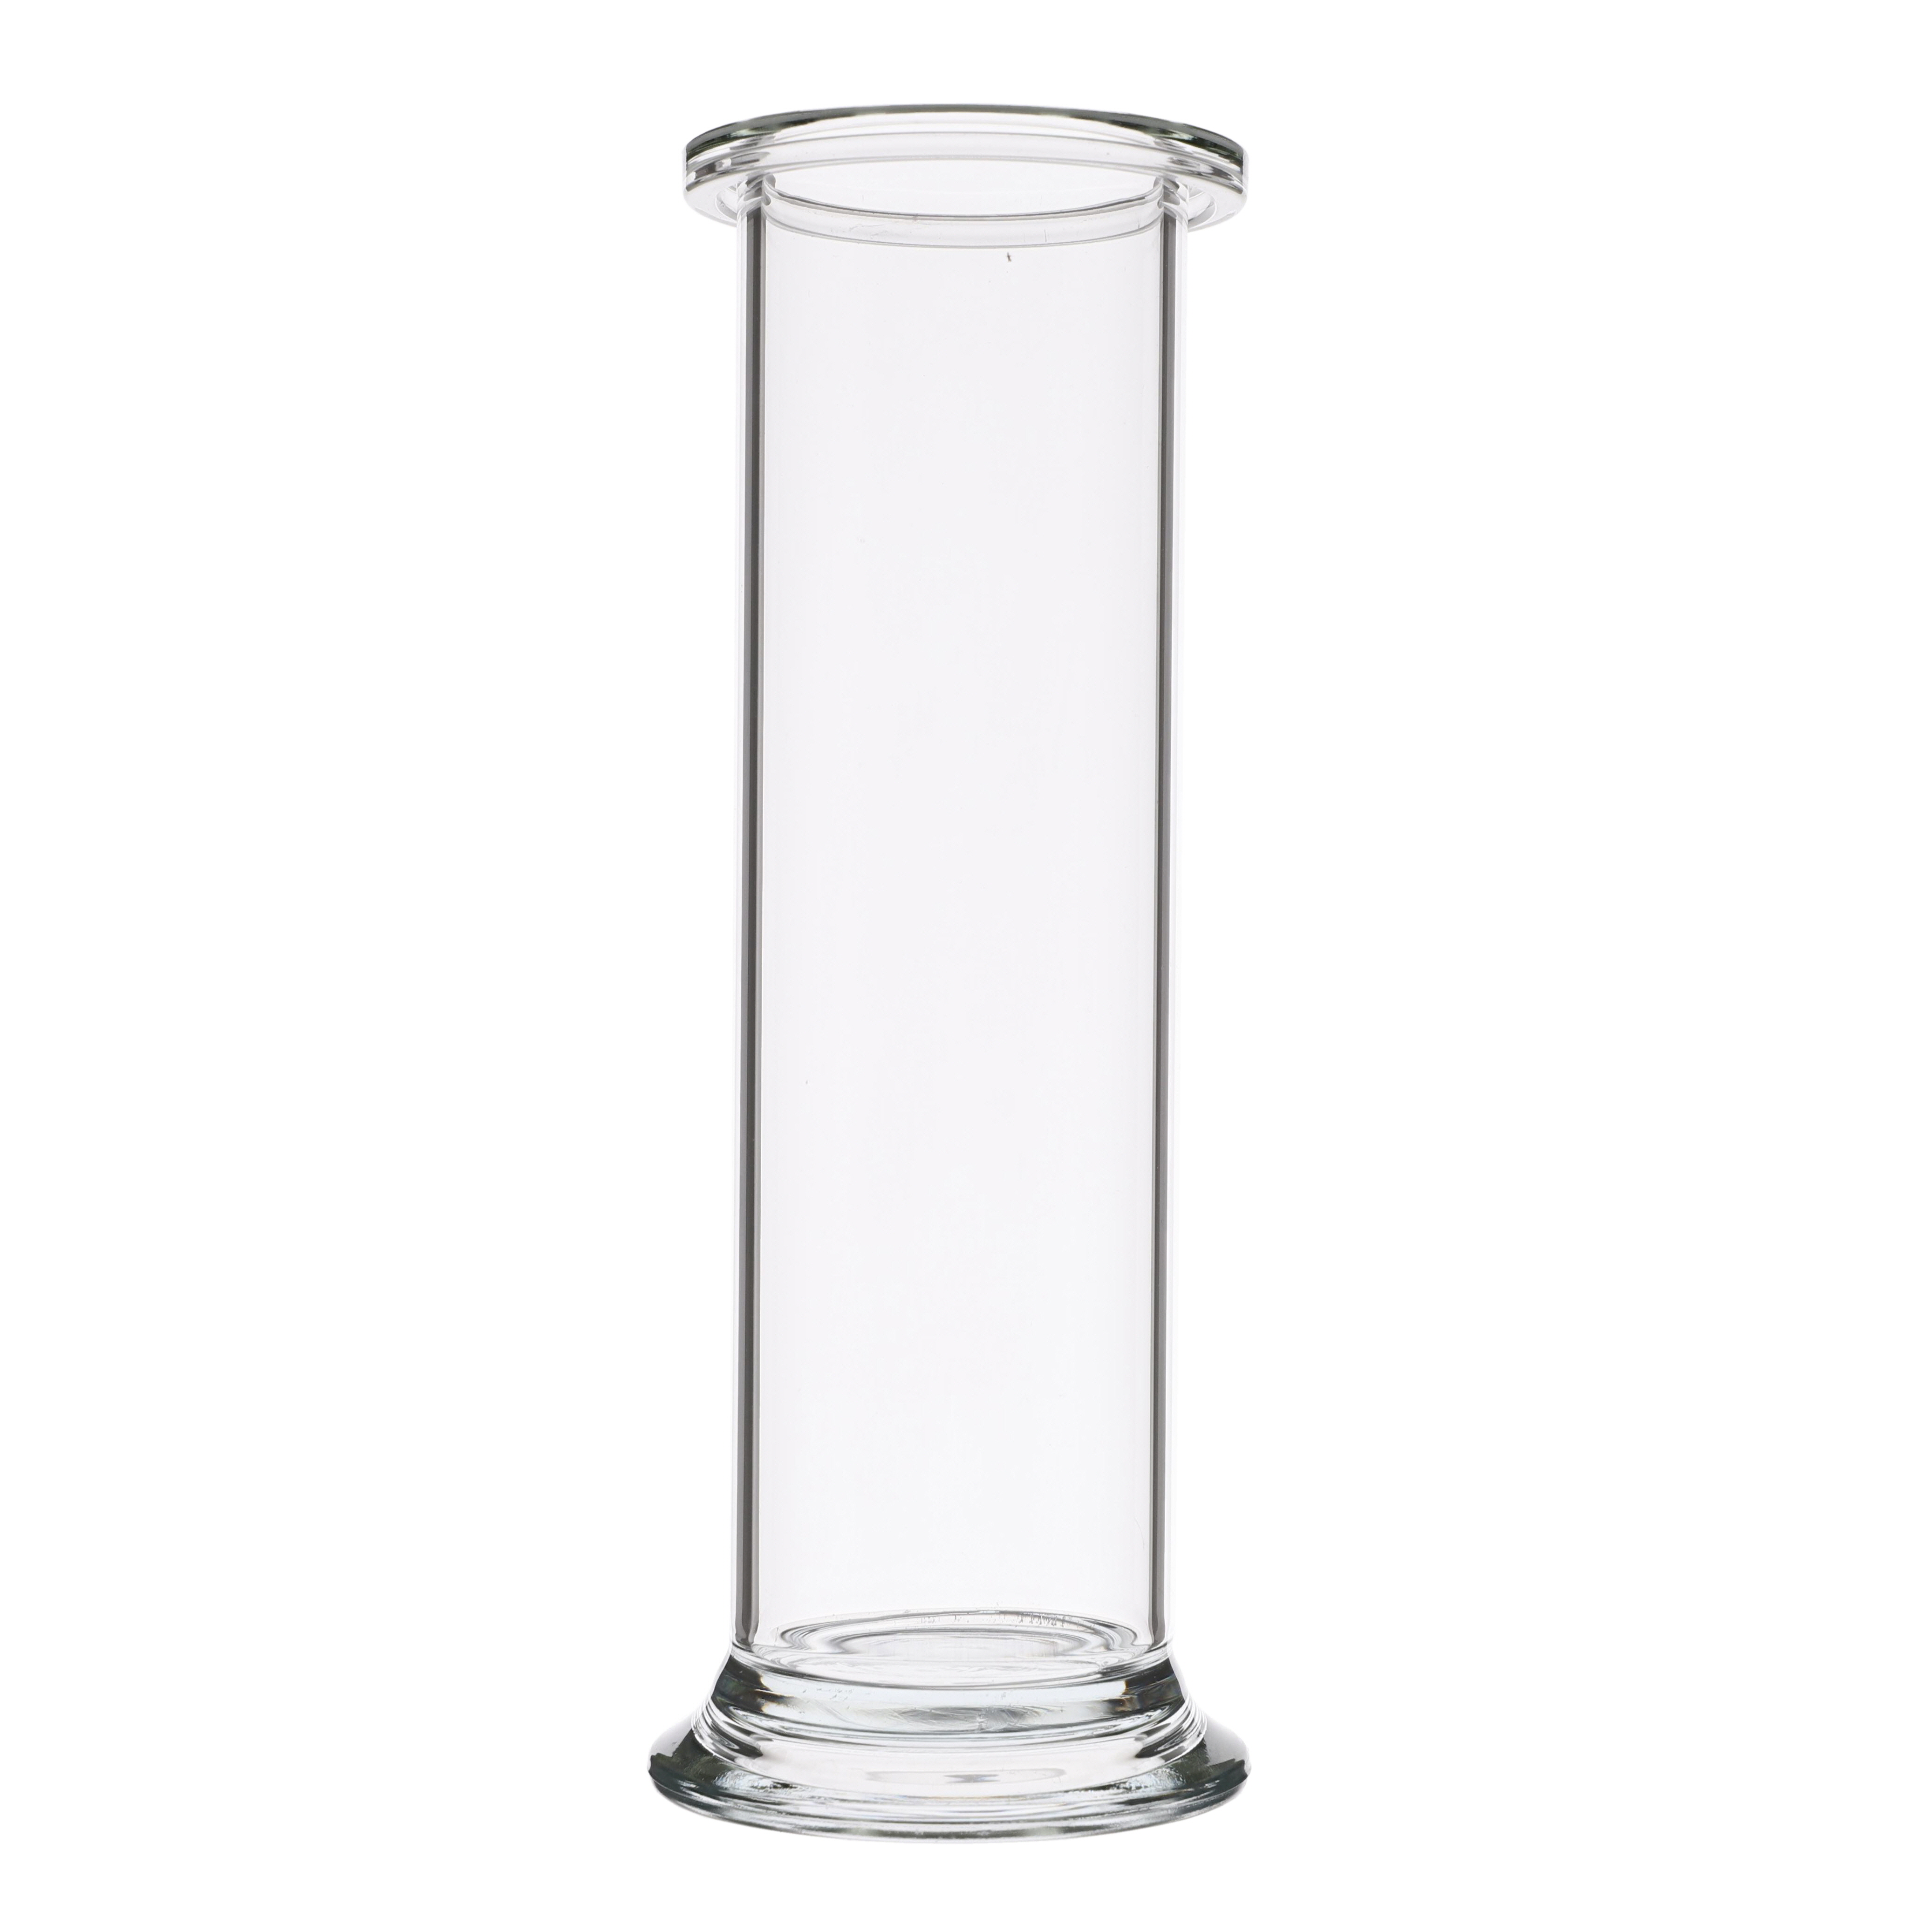 Gas Jar Cylindrical - 200 Mm X 60 Mm